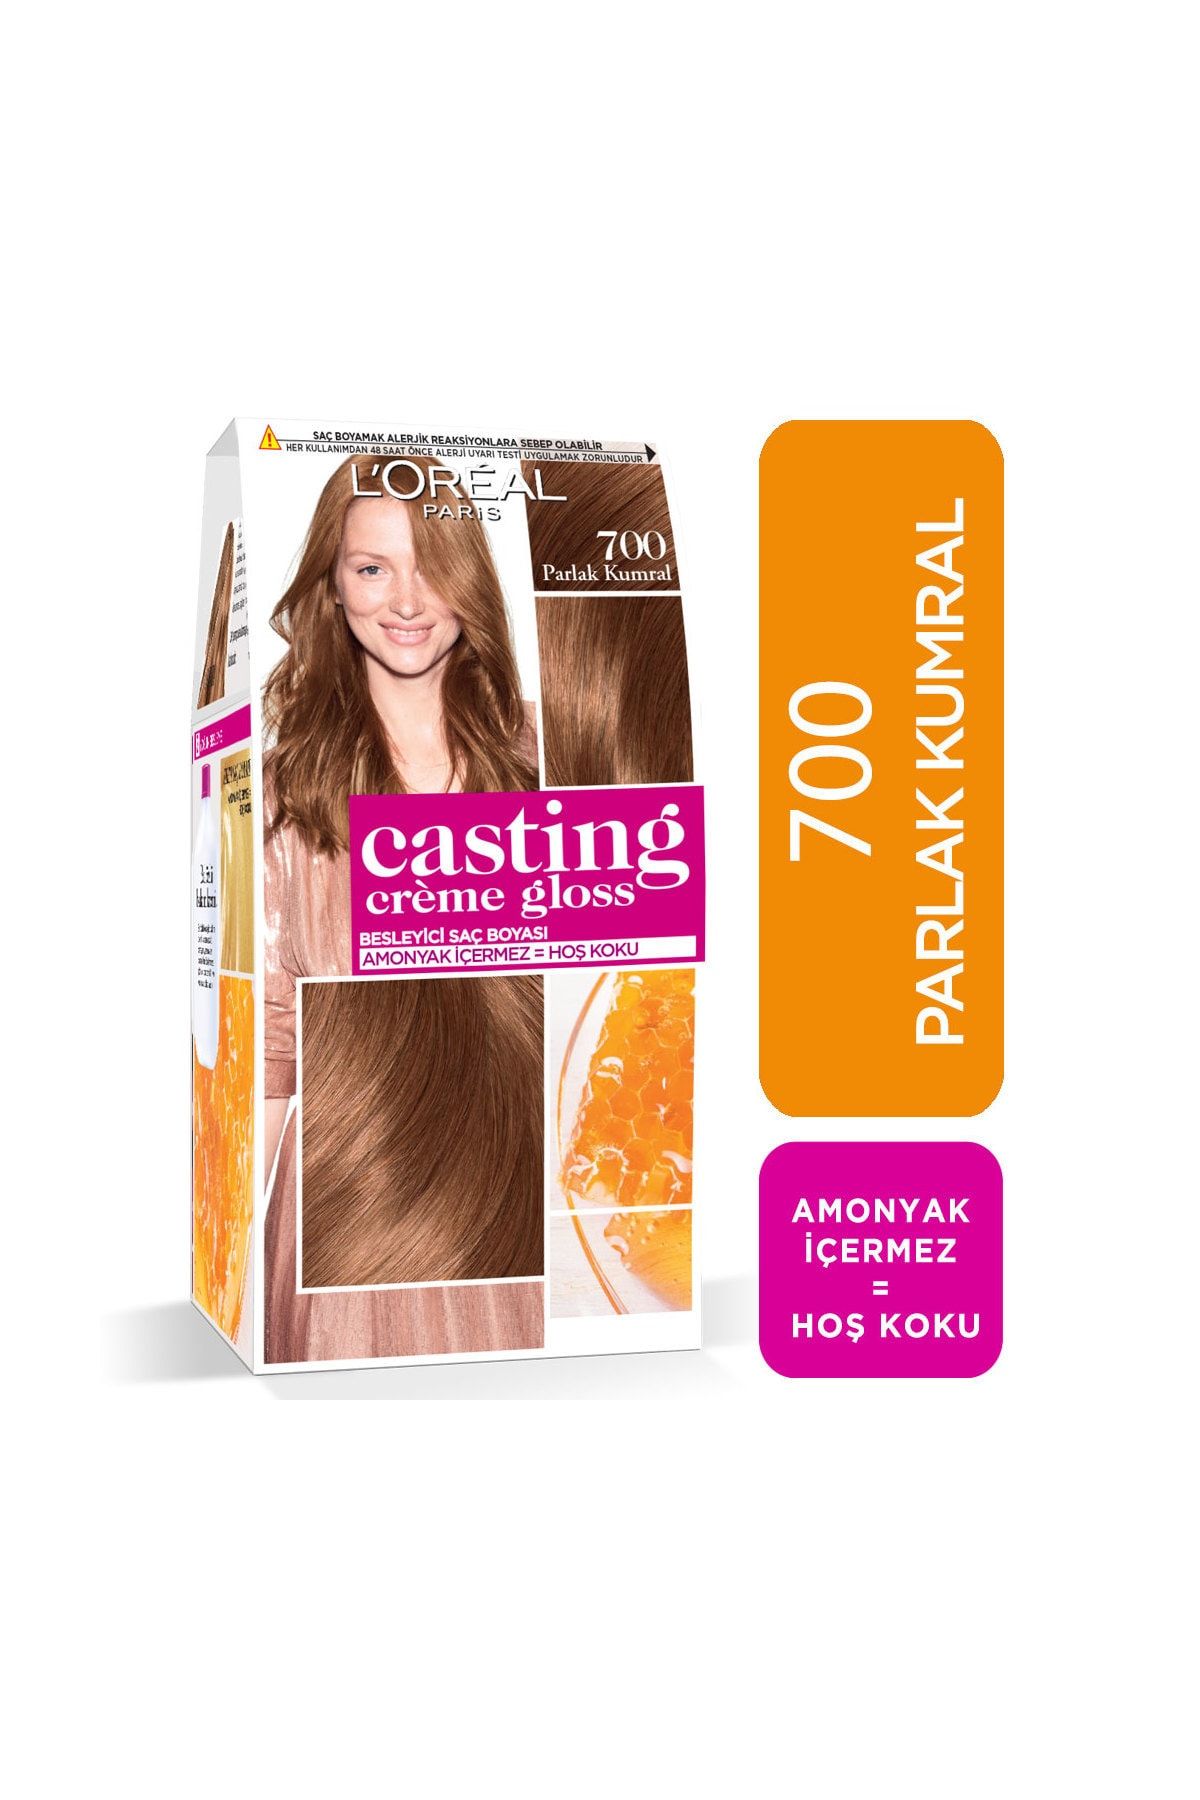 L'Oreal Paris Saç Boyası - Casting Creme Gloss 700 Parlak Kumral 3600523302925